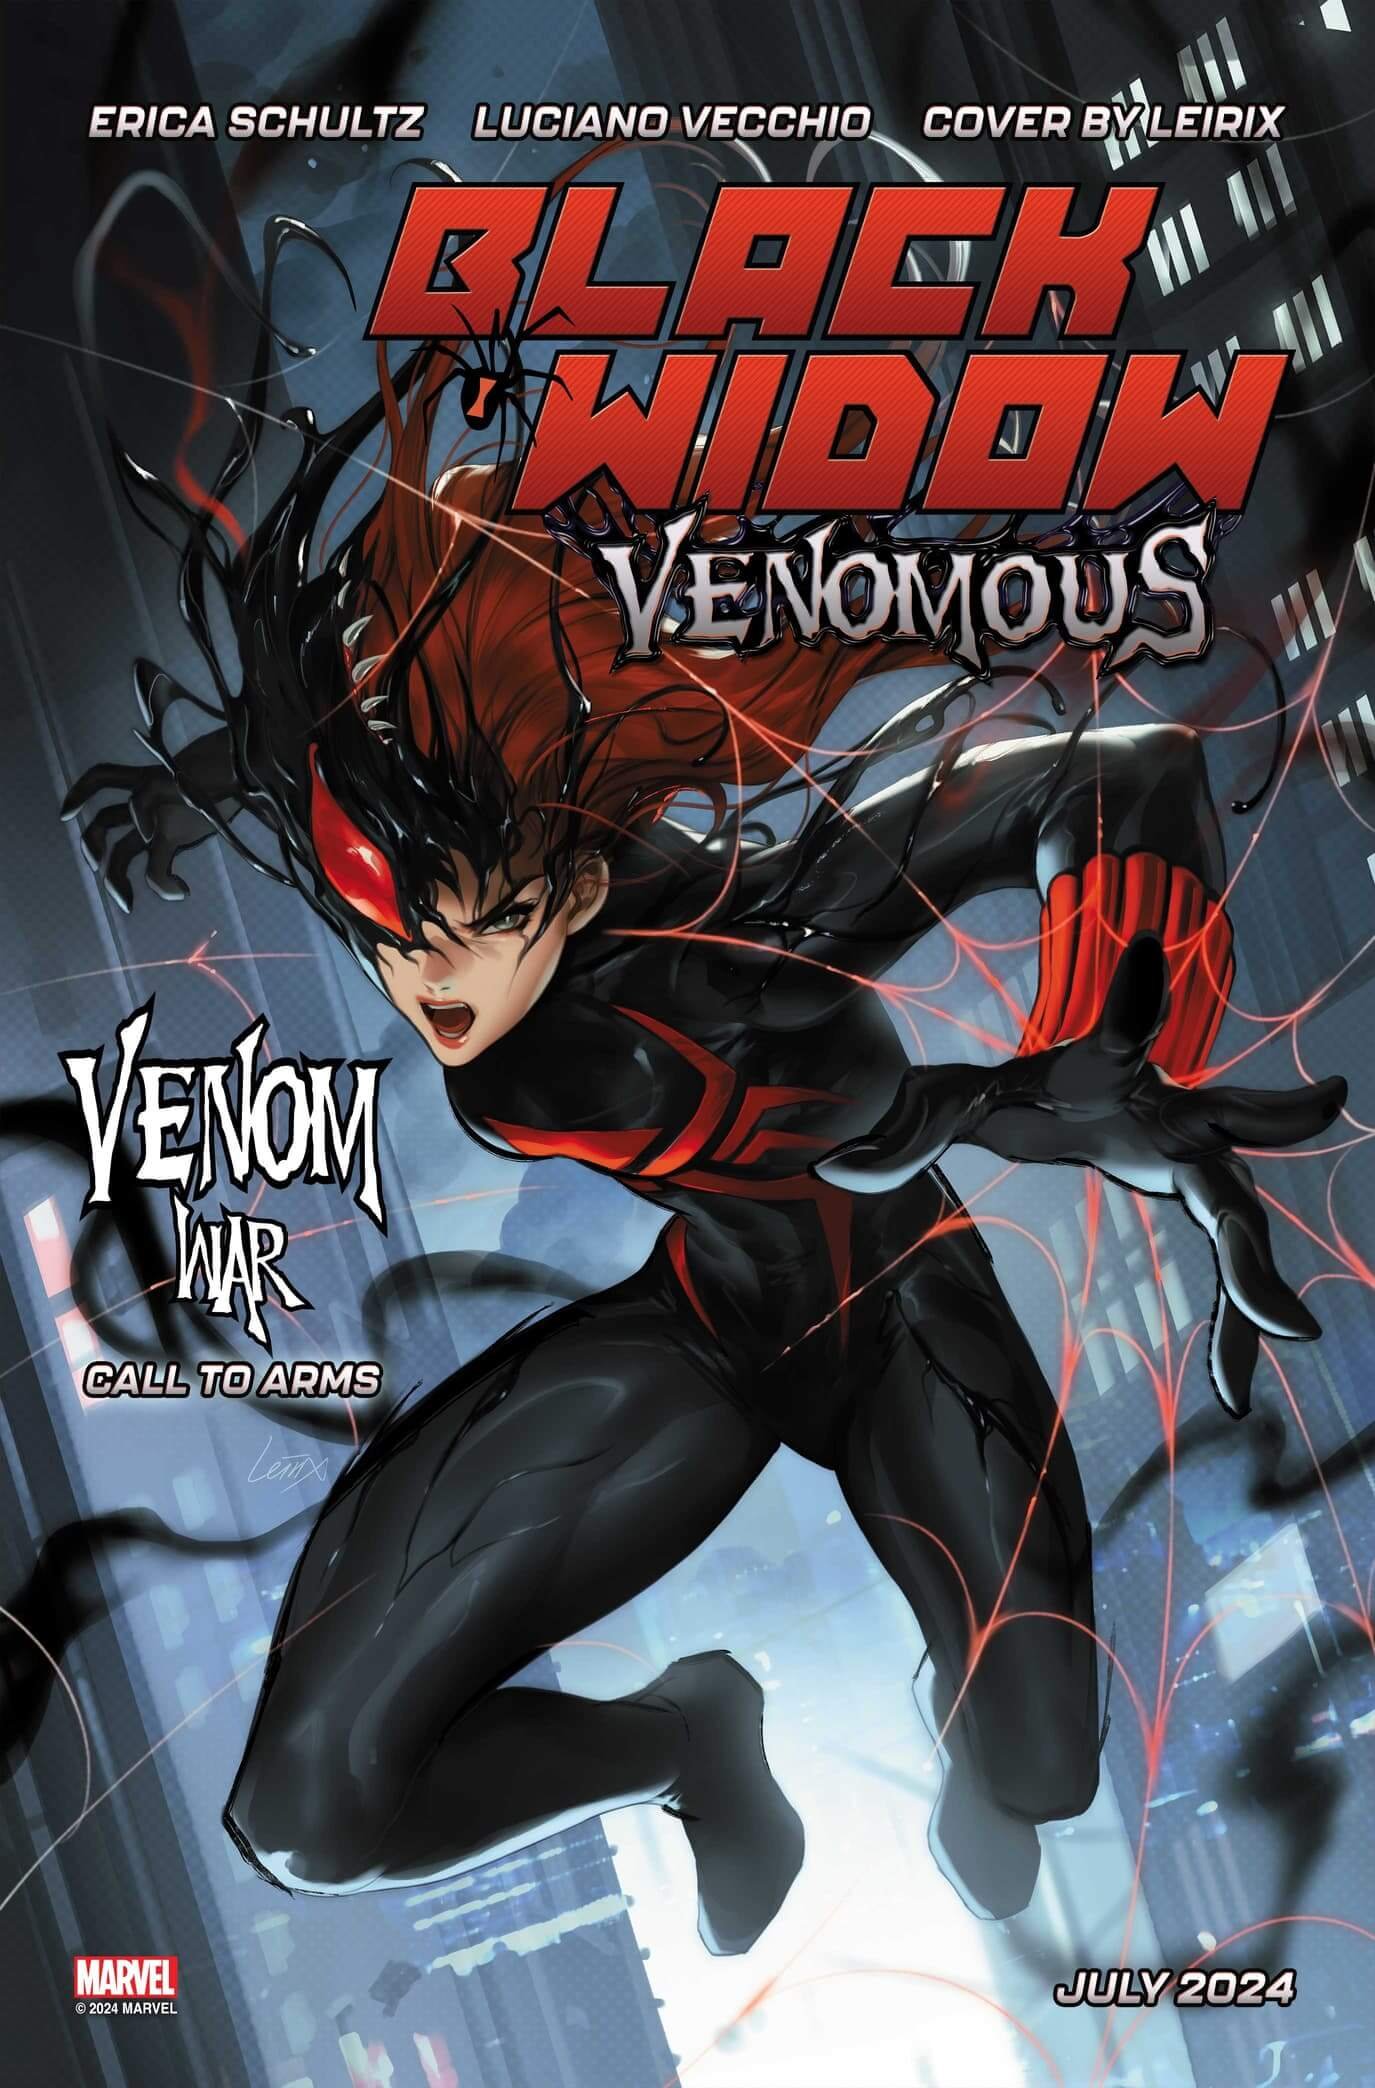 Couverture de Black Widow : Venomous par Leirix